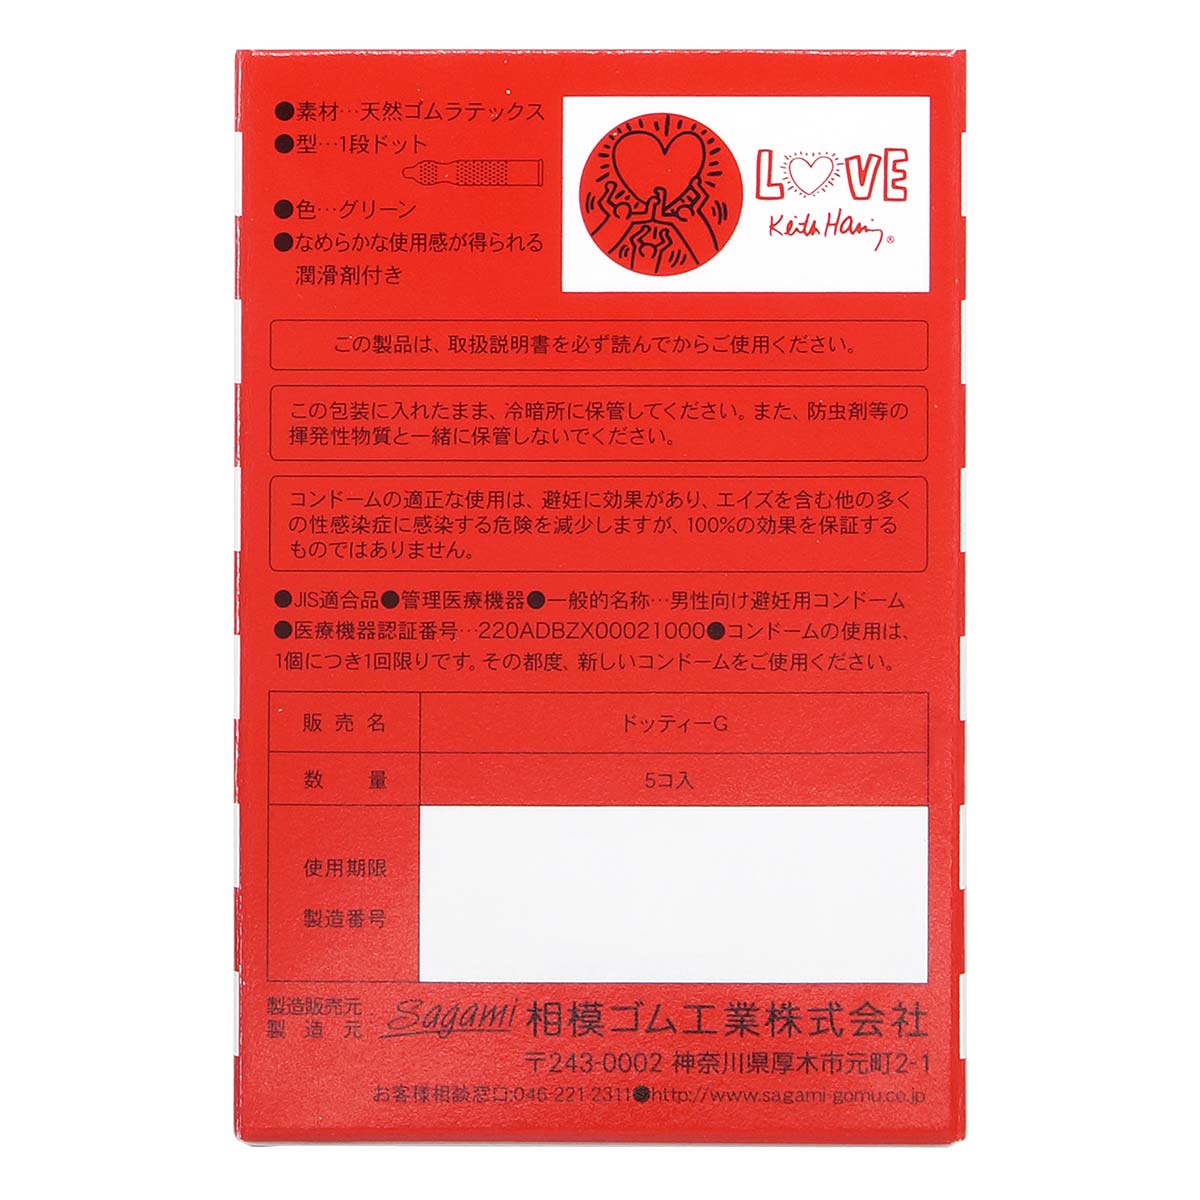 Sagami LOVE Keith Haring Dots 5's Pack Latex Condom-p_3